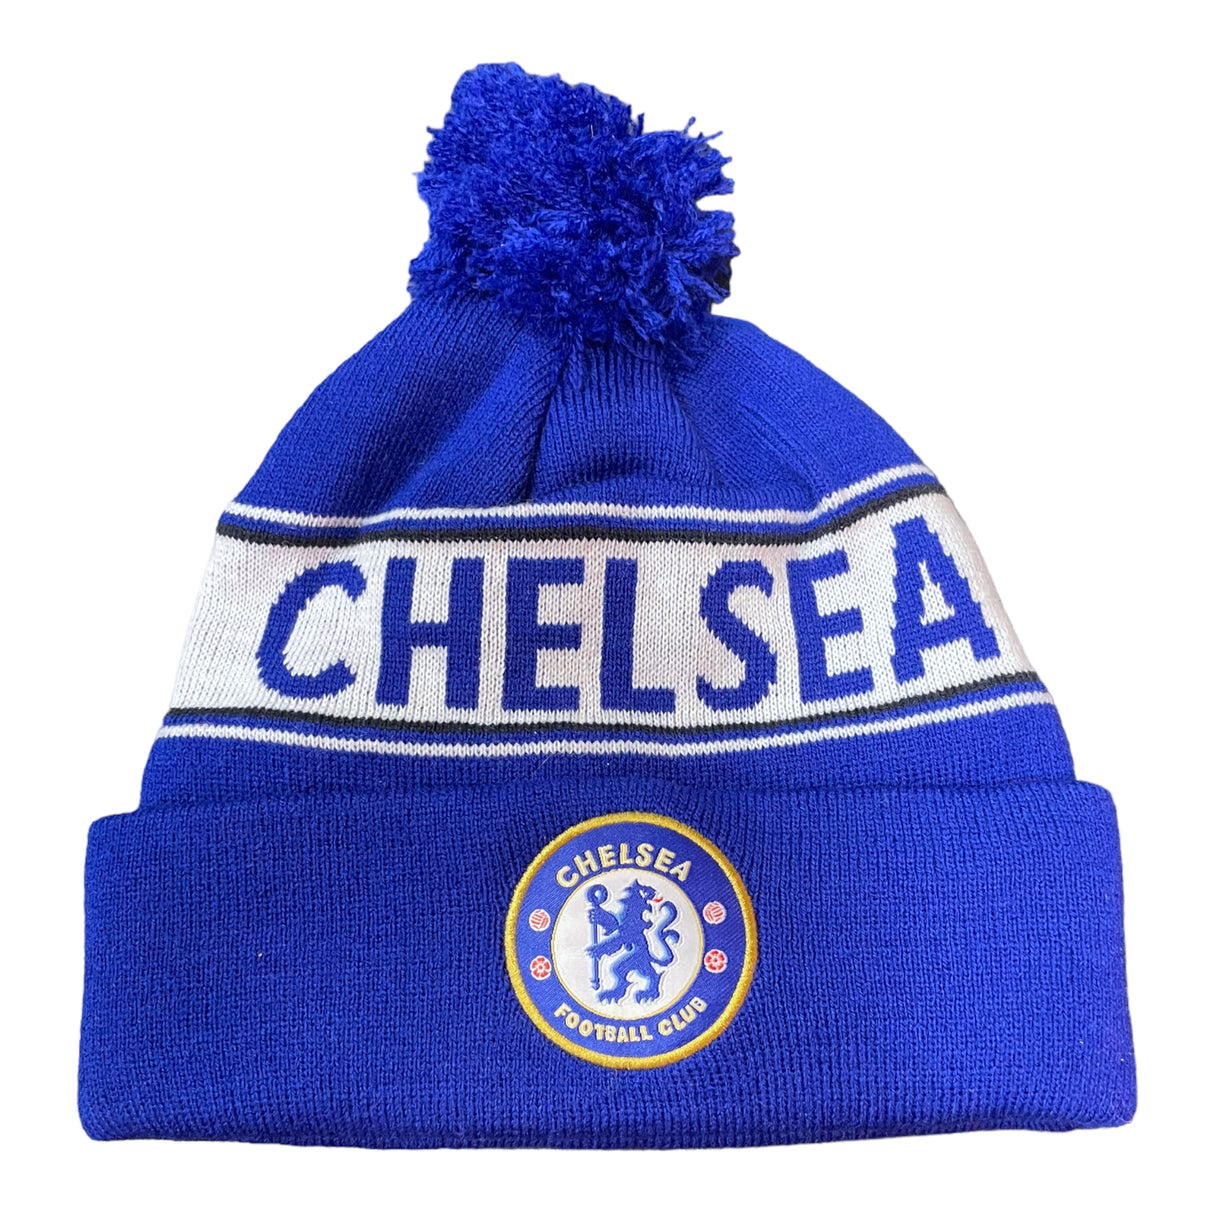 Chelsea FC tuque du club de soccer - Bleu